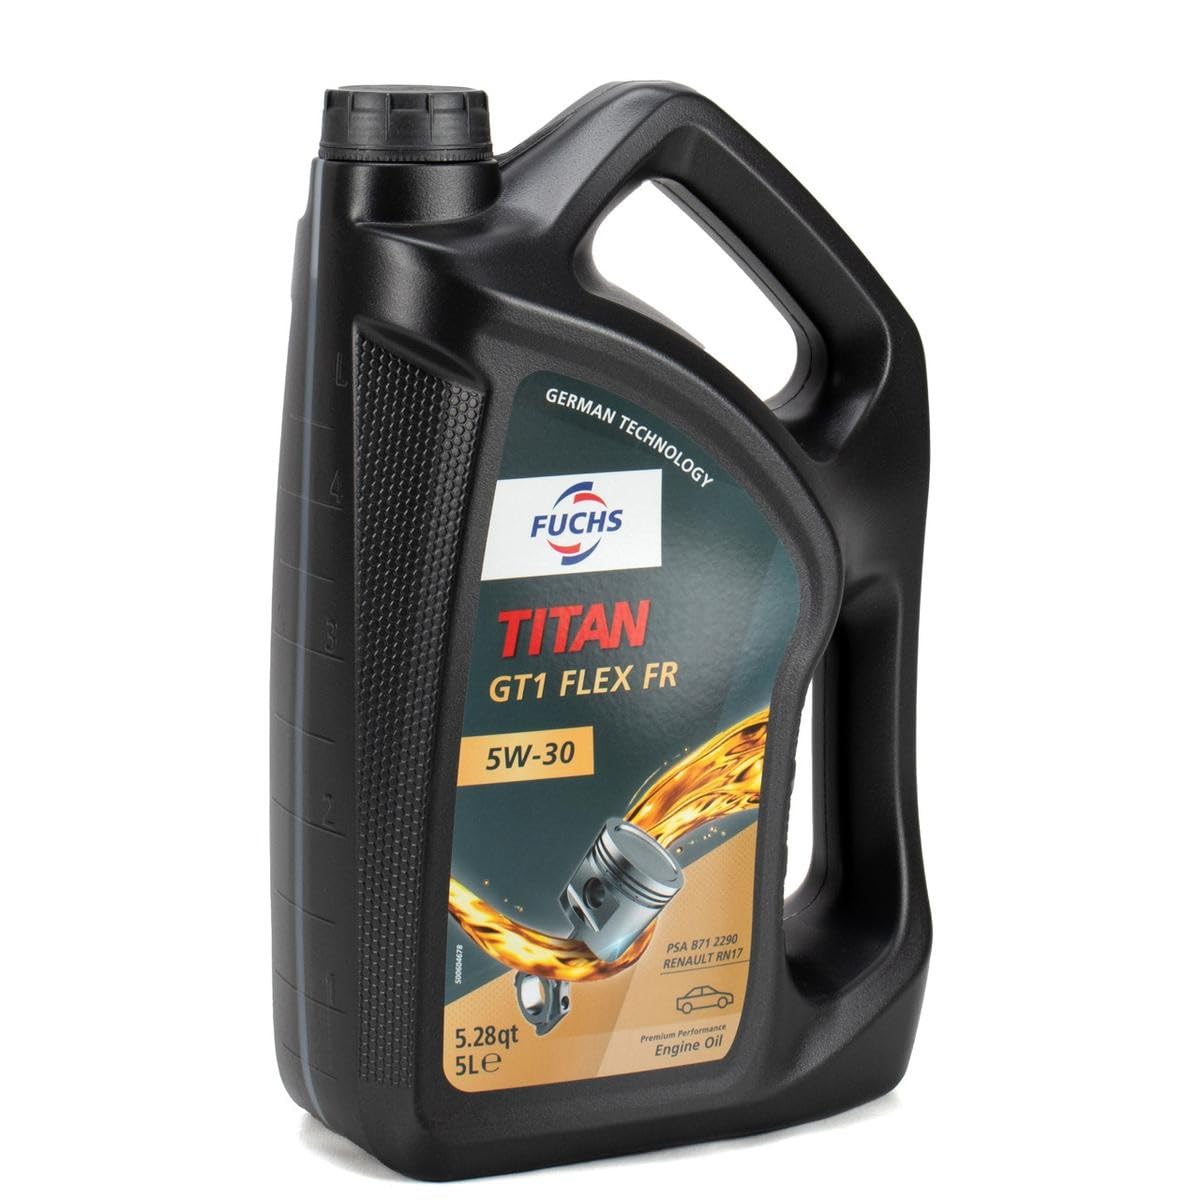 Titan GT1 Flex FR SAE 5W-30 Motorenöl 5 Liter von Fuchs